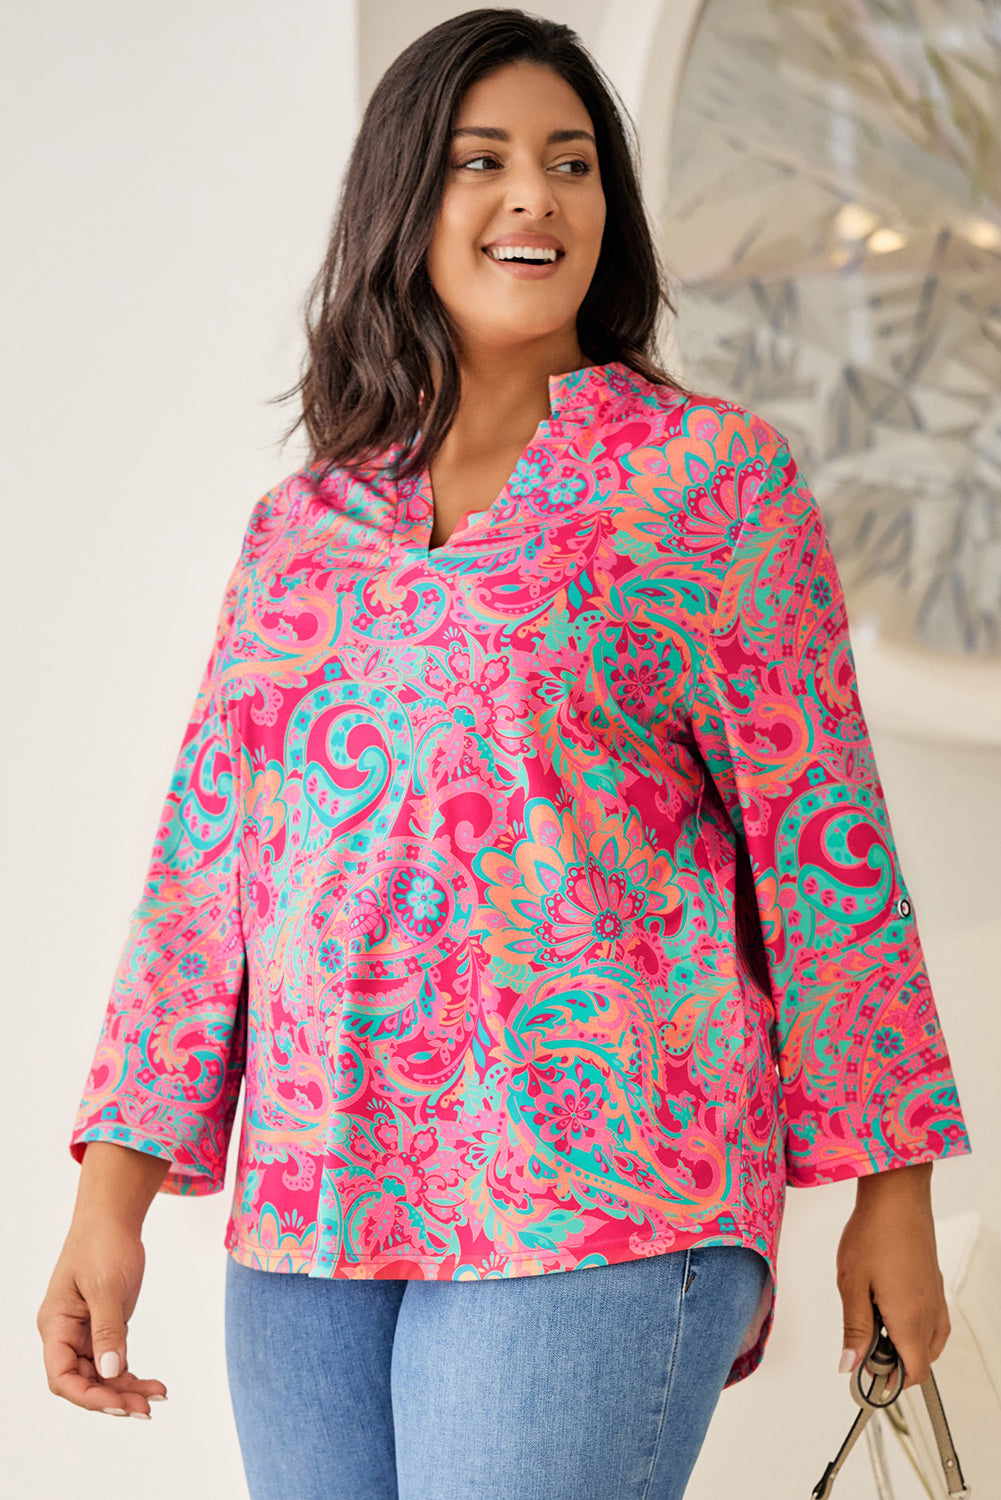 Rosa bedruckte Plus-Size-Bluse mit Paisley-Print und V-Ausschnitt mit Rollriegelärmeln